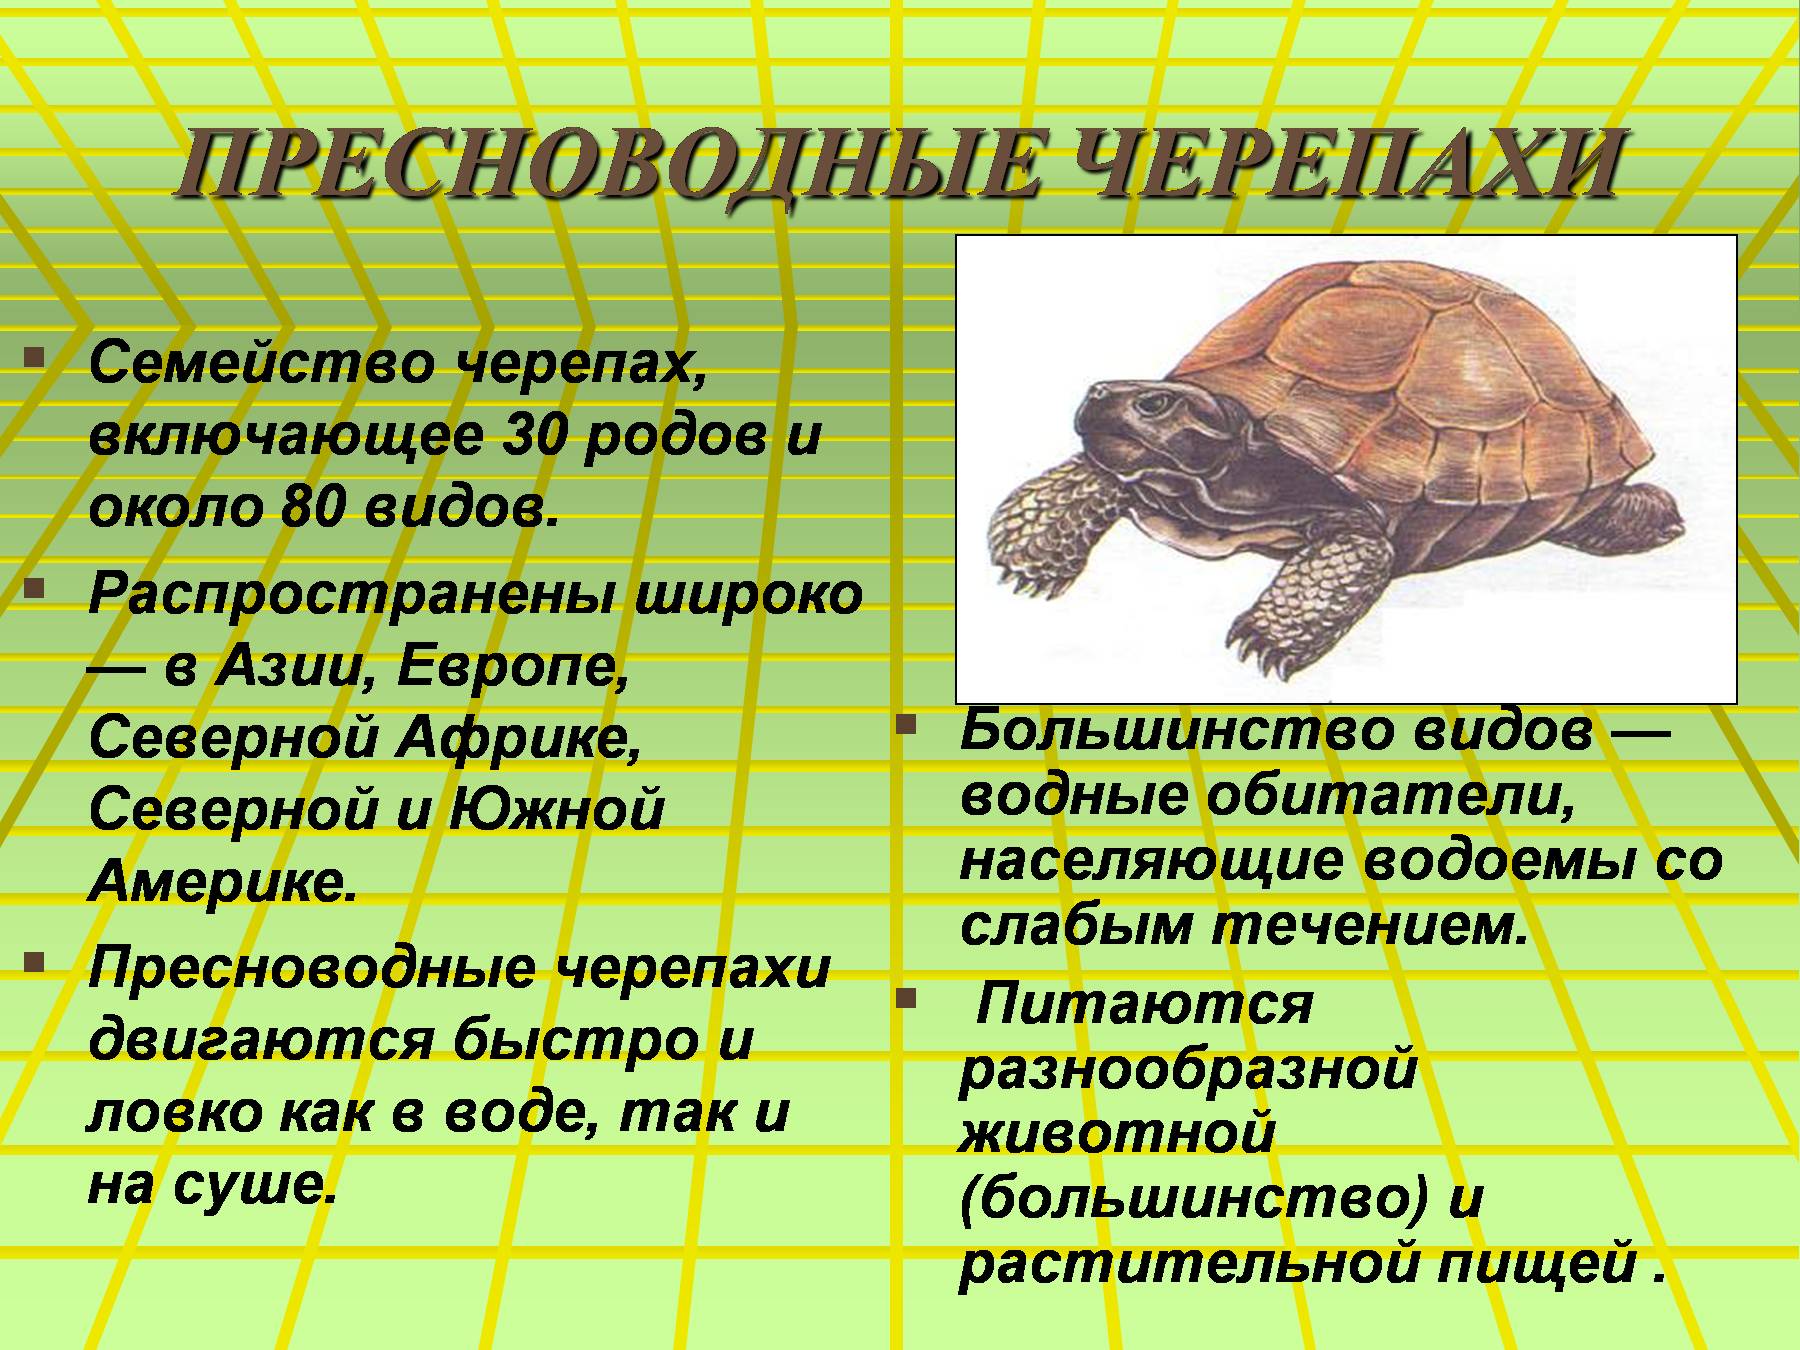 Доклад о черепахе. Описание черепахи. Черепаха для презентации. Сведения о черепахе. Презентация на тему черепахи.